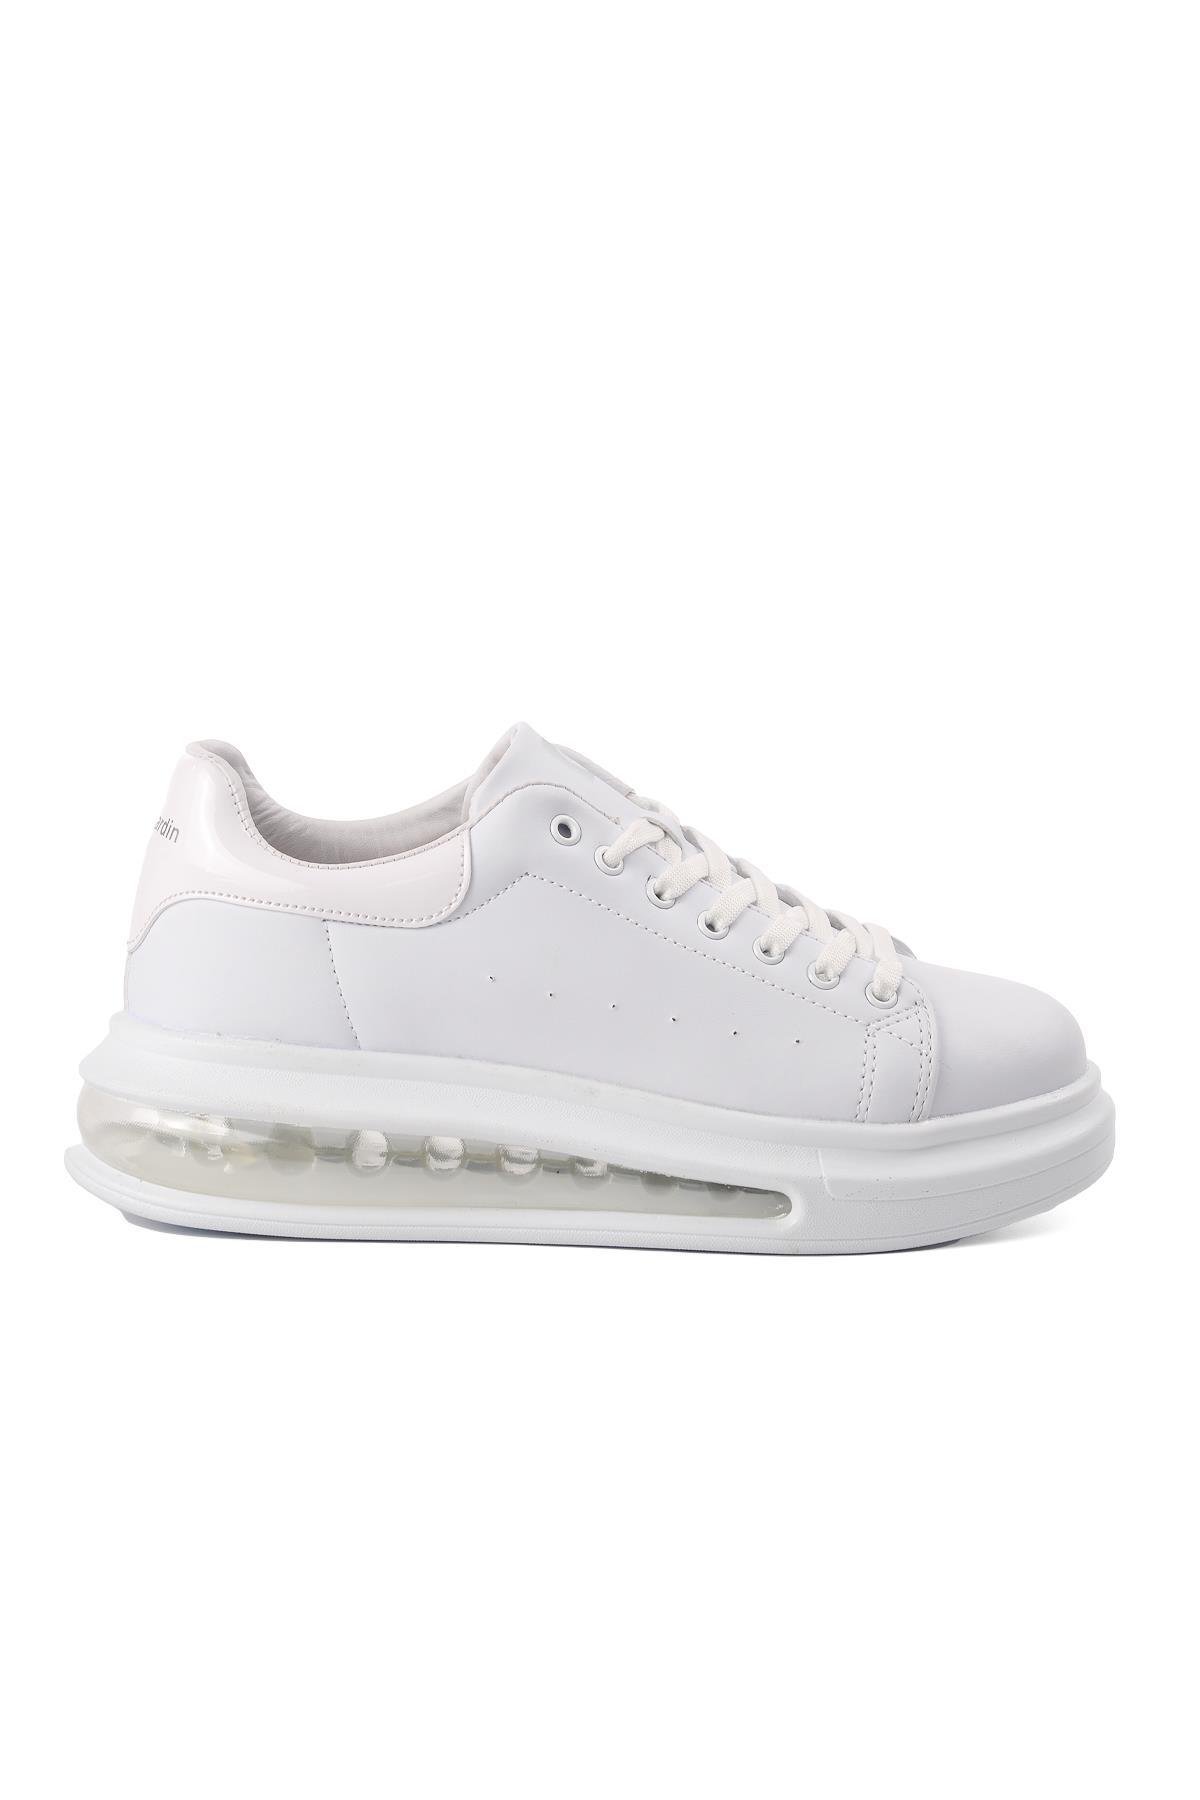 Pierre Cardin PC-31304 Beyaz Air Taban Kadın Sneaker - Ayakmod